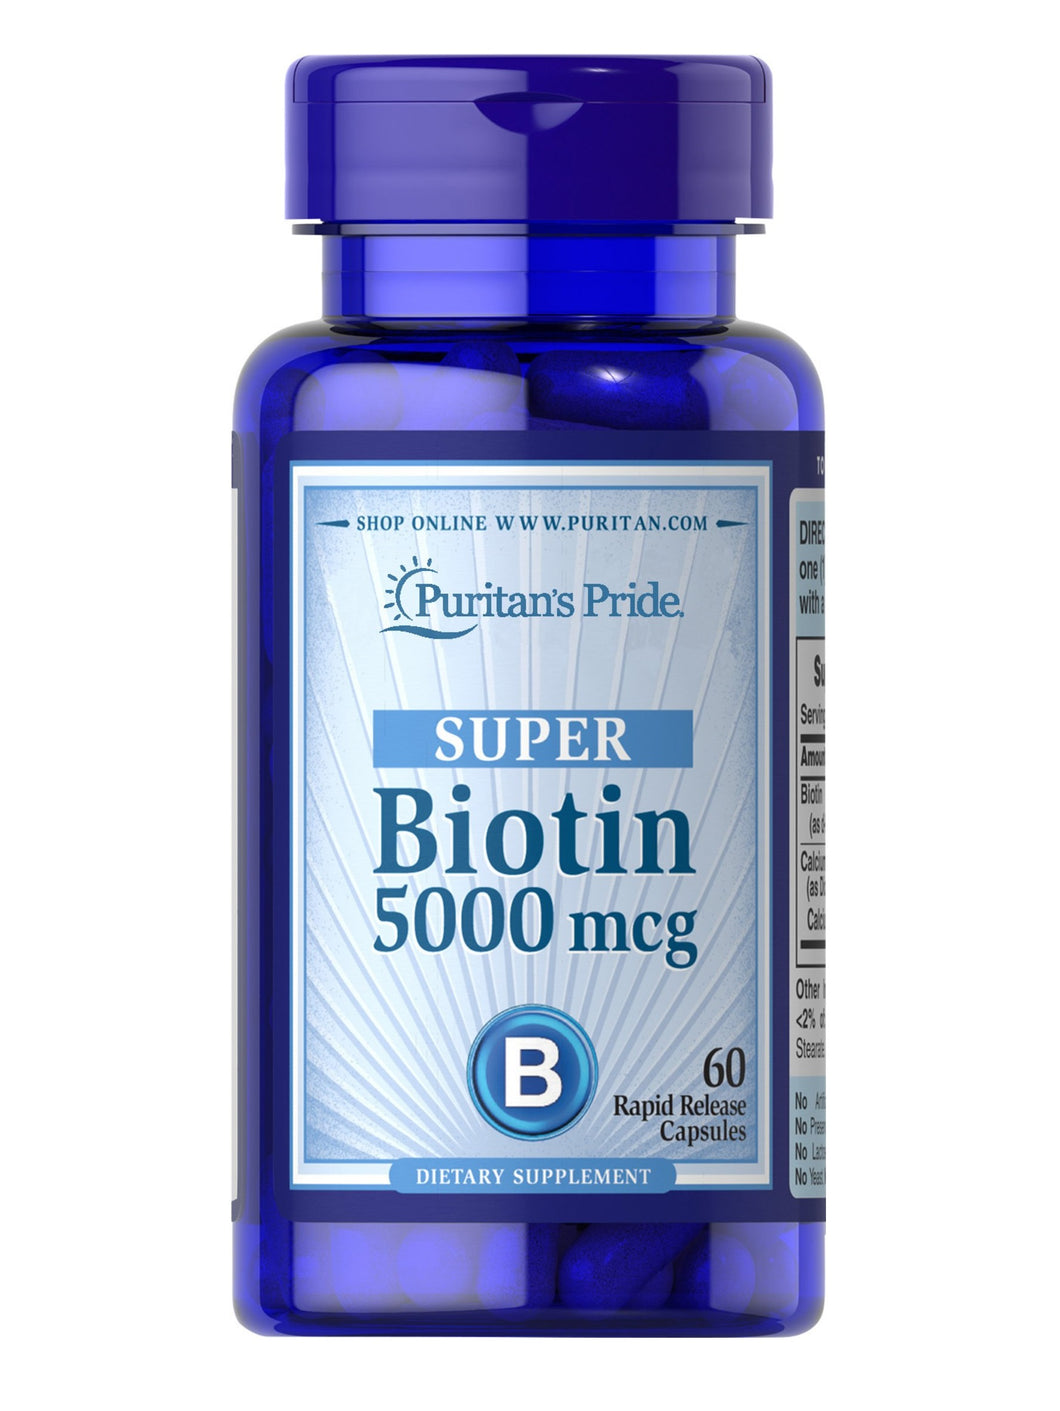 Biotina de 5,000 mcg. Puritan’s Pride. Presentaciones de 60 cápsulas